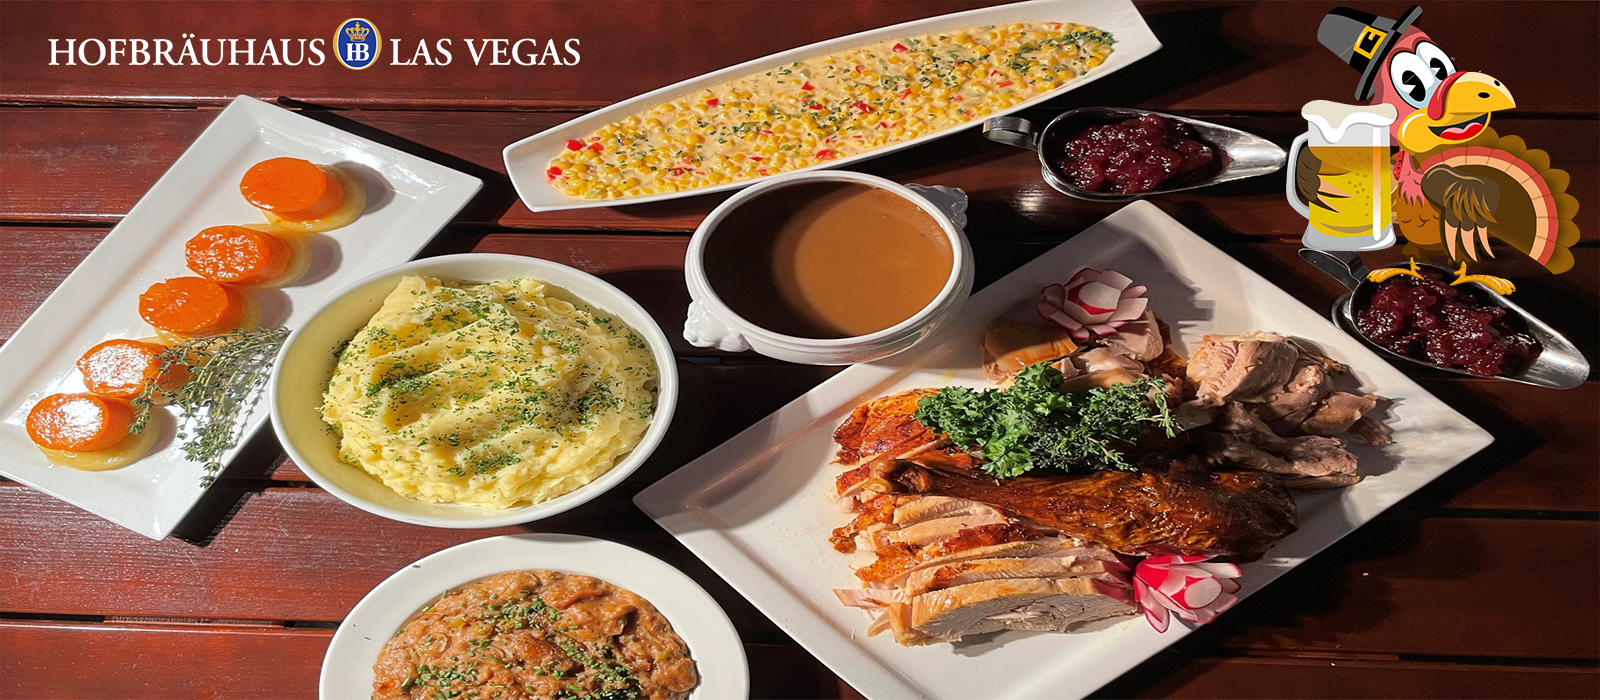 The Best Restaurants For Thanksgiving In Las Vegas